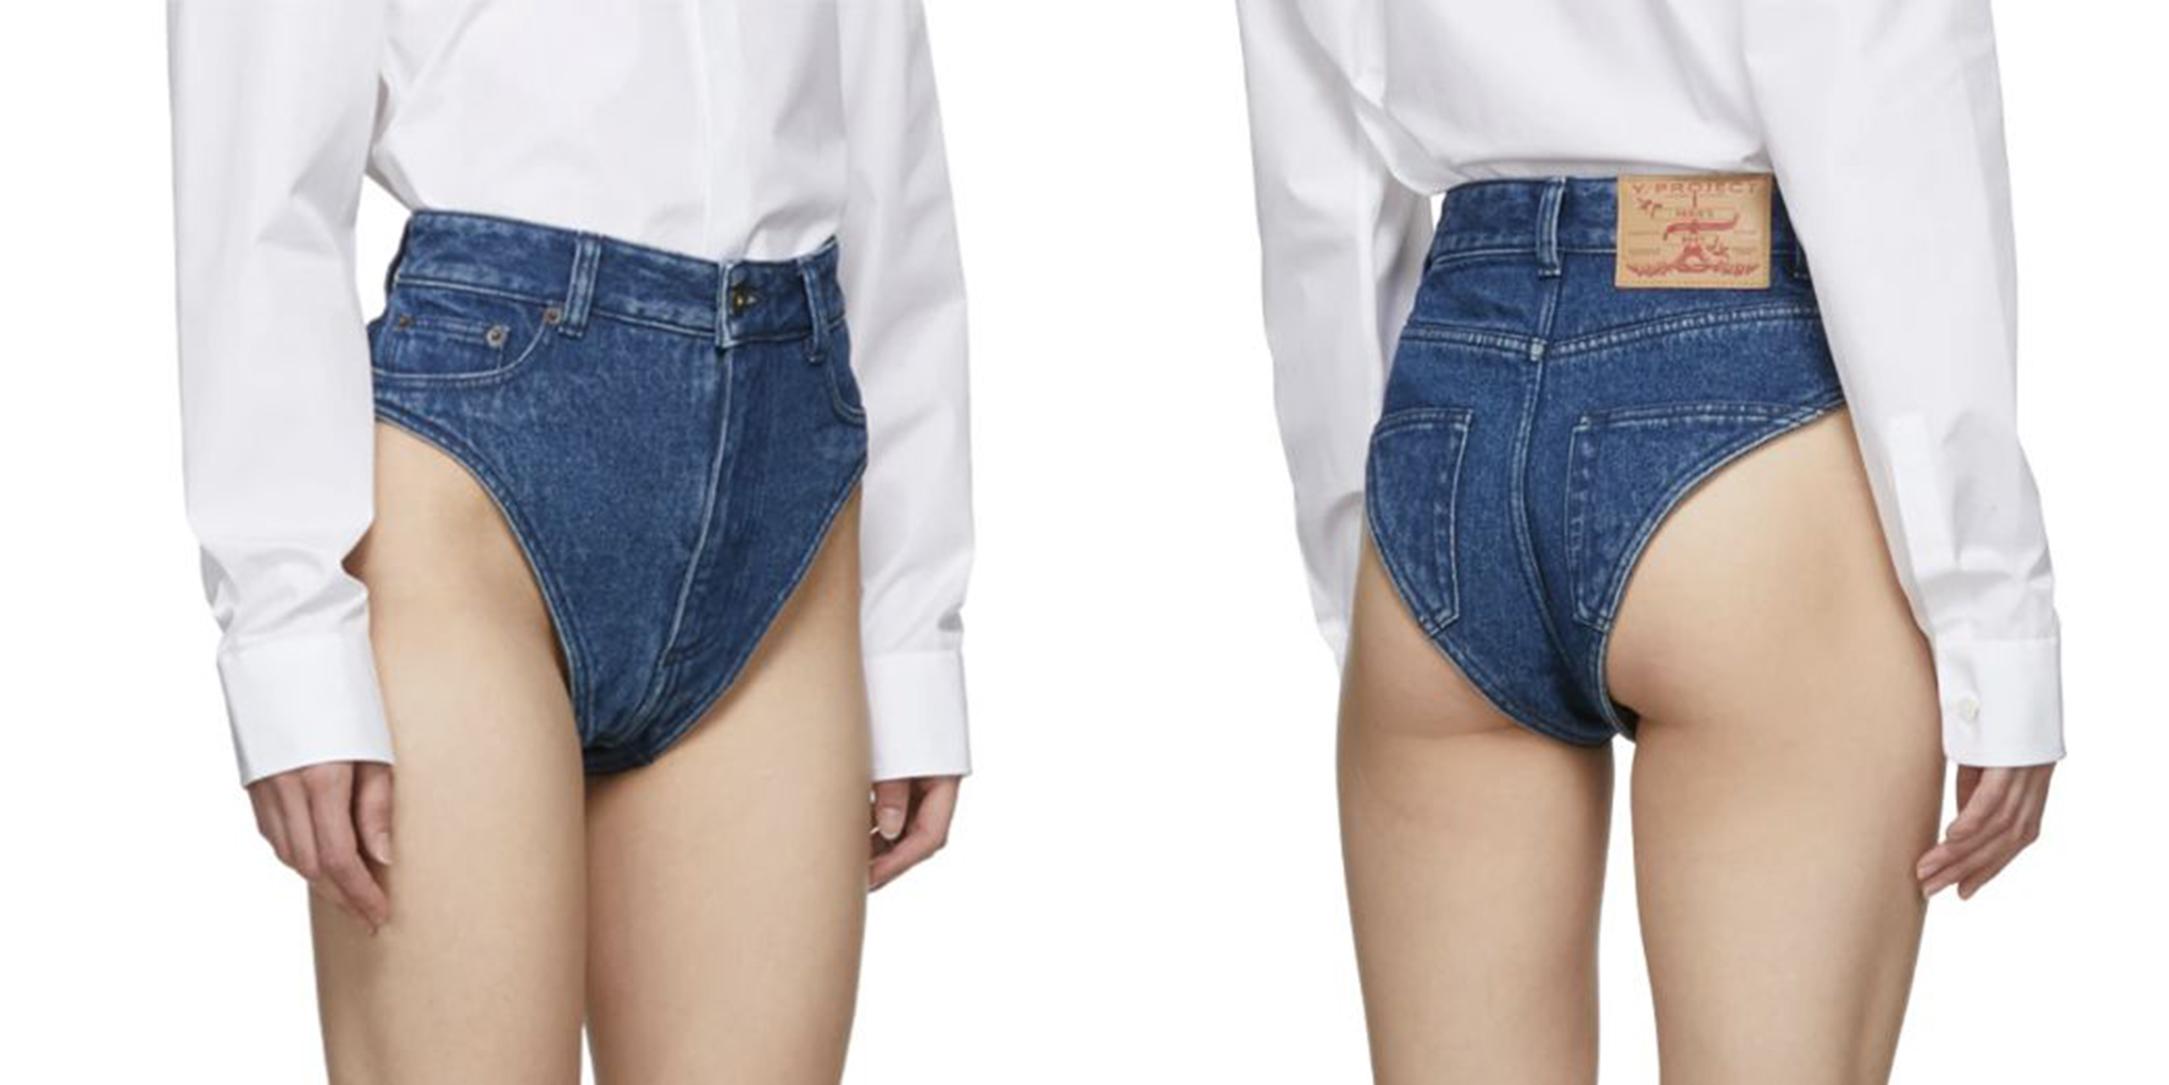 Blugi panties, noua modă de blugi 2019. Ai ieși așa pe stradă? FOTO